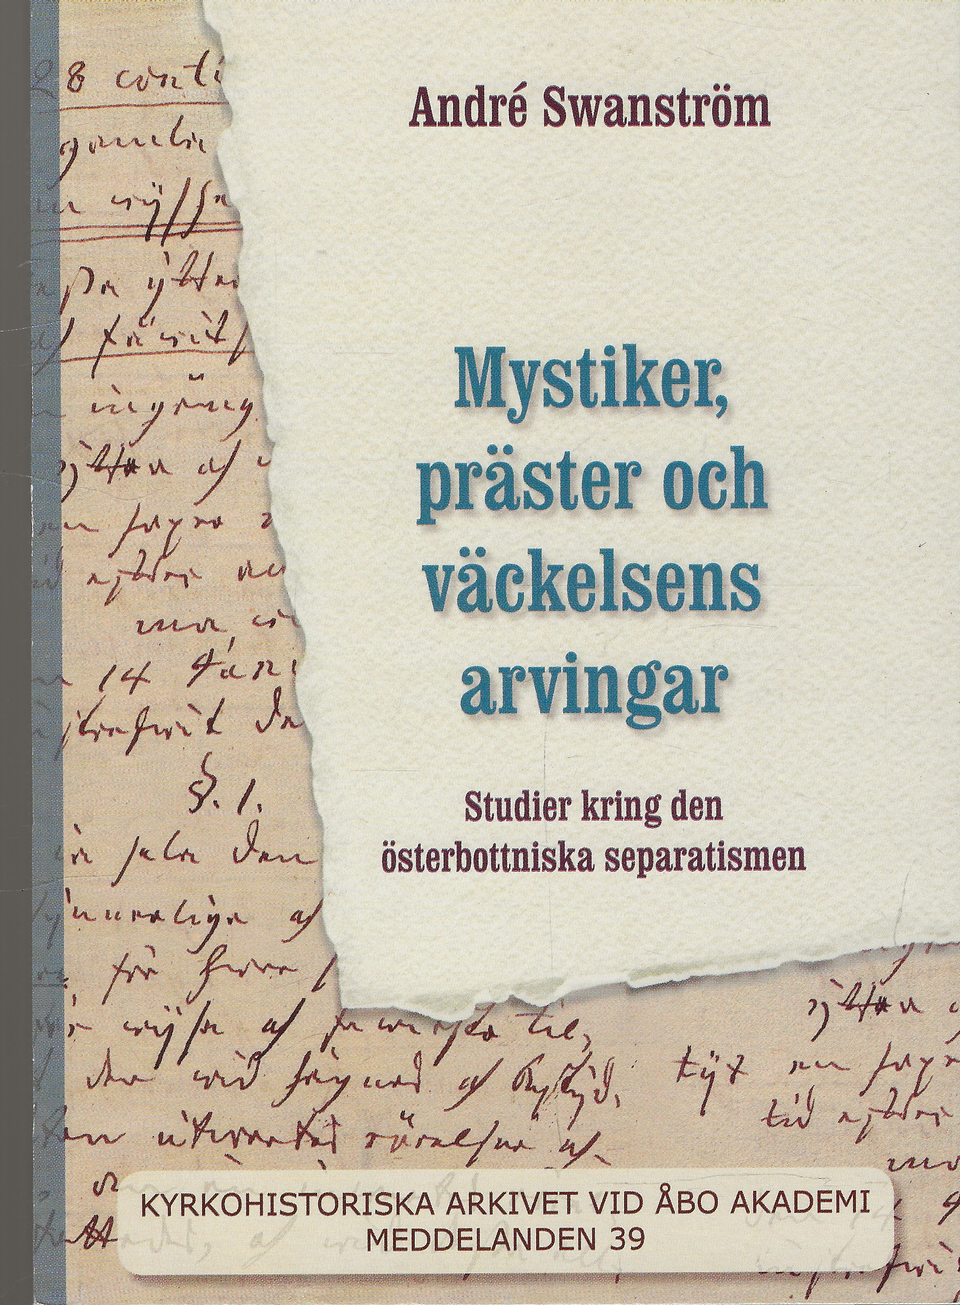 André Swanström: Mystiker, präster och väckelsens arvingar. 2007